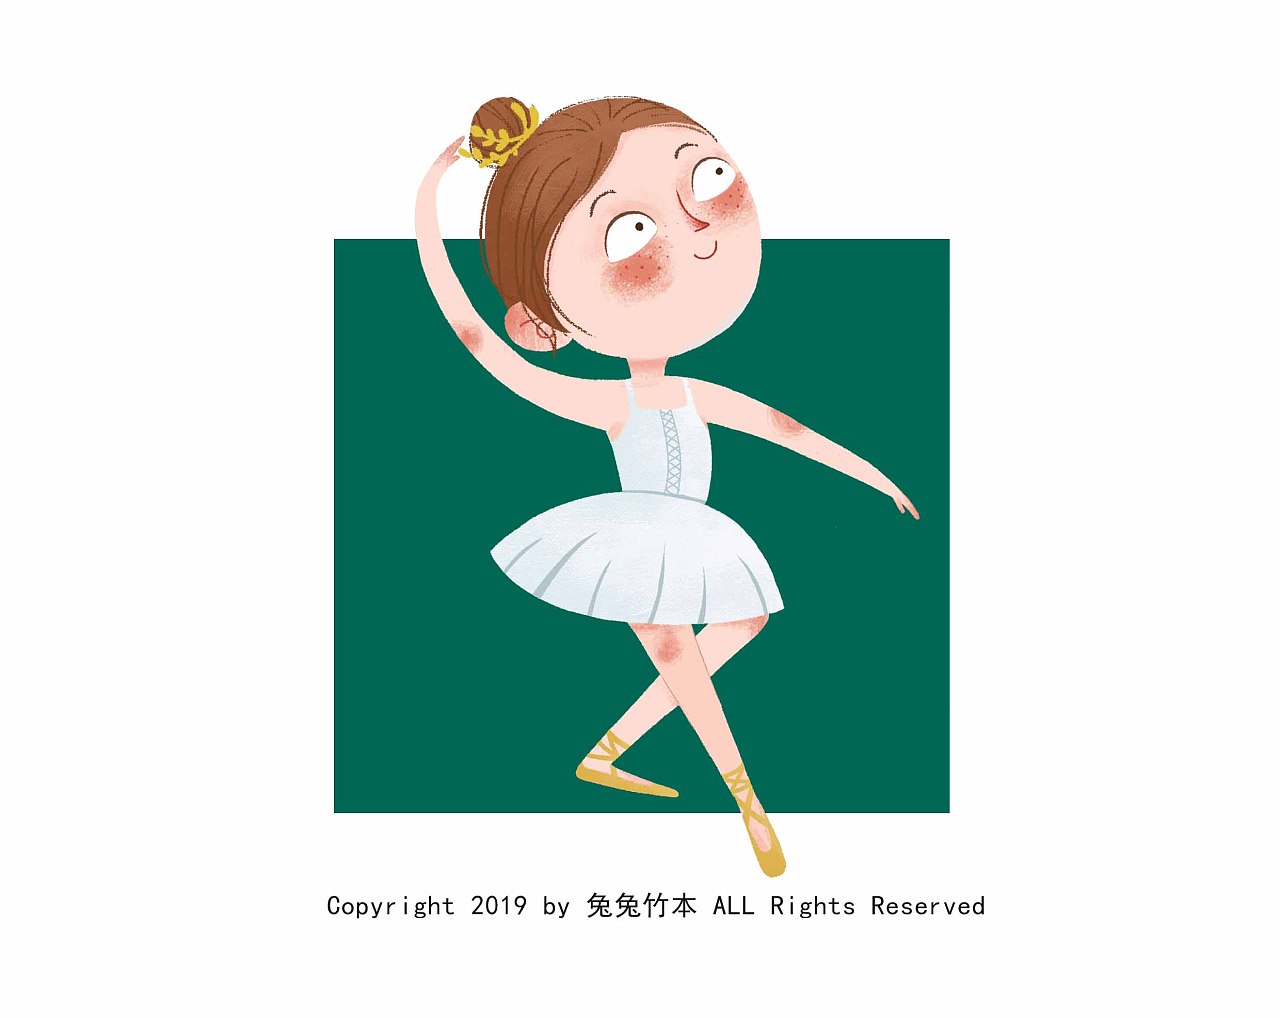 可爱的卡通少儿芭蕾舞者插画图片素材免费下载_觅知网